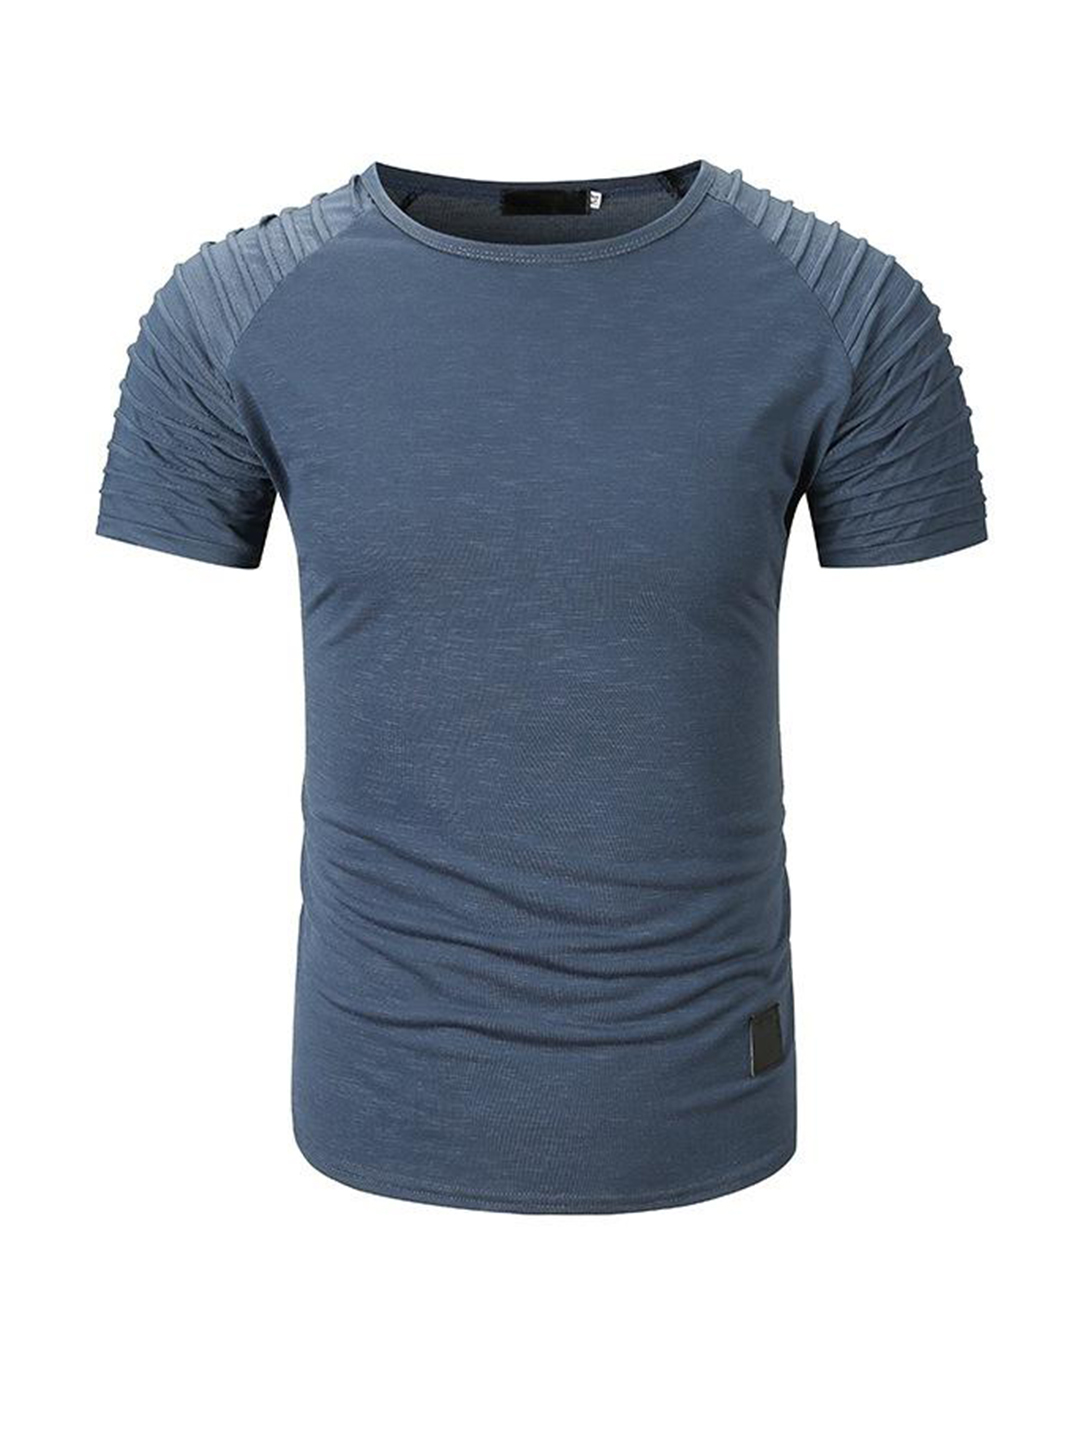 Men's Halter Raglan Sleeves Short Sleeve T-shirt-poisonstreetwear.com